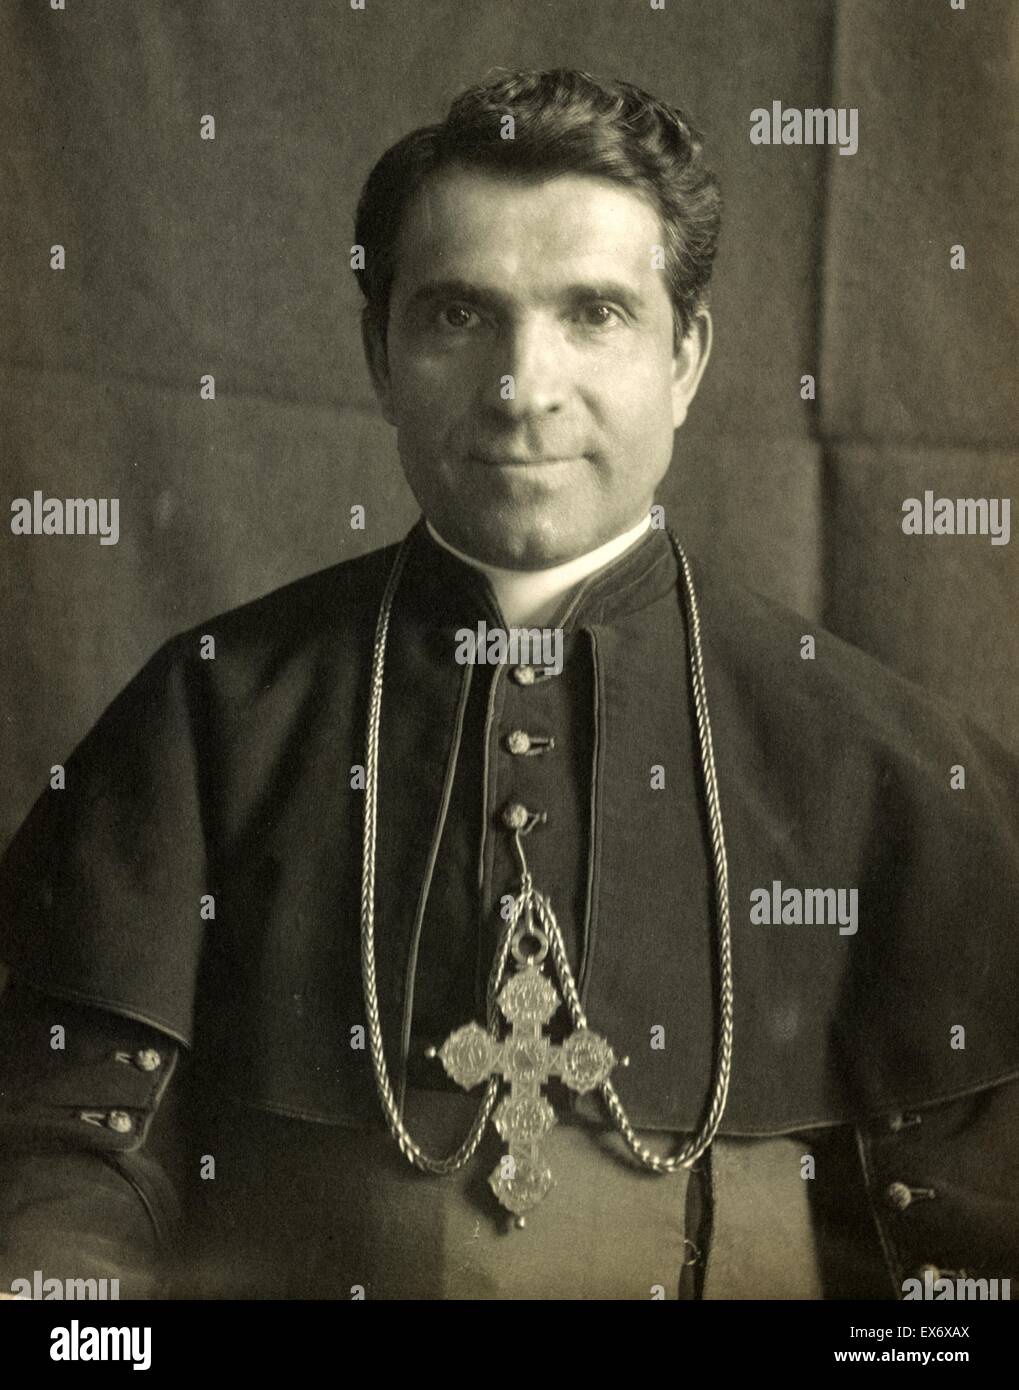 Sebastiano Martinelli (20 agosto 1848 - 4 luglio 1918) Chiesa cattolica romana il Cardinale, che ha servito come Prefetto della Congregazione dei Riti Foto Stock